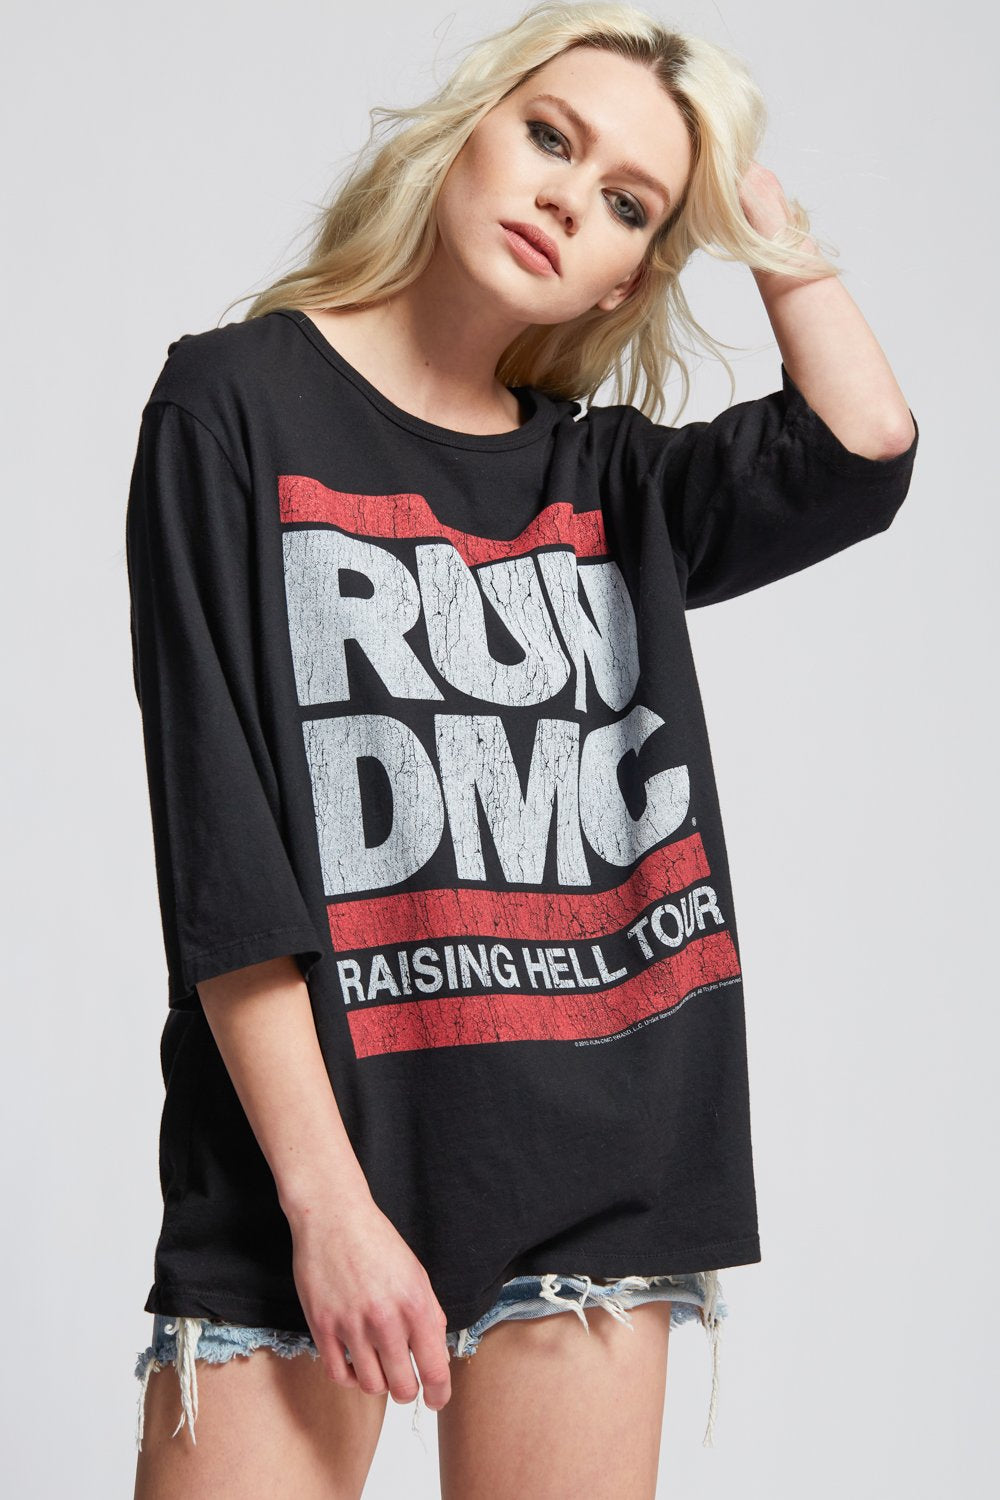 Run-DMC Raising Hell Tour Tee